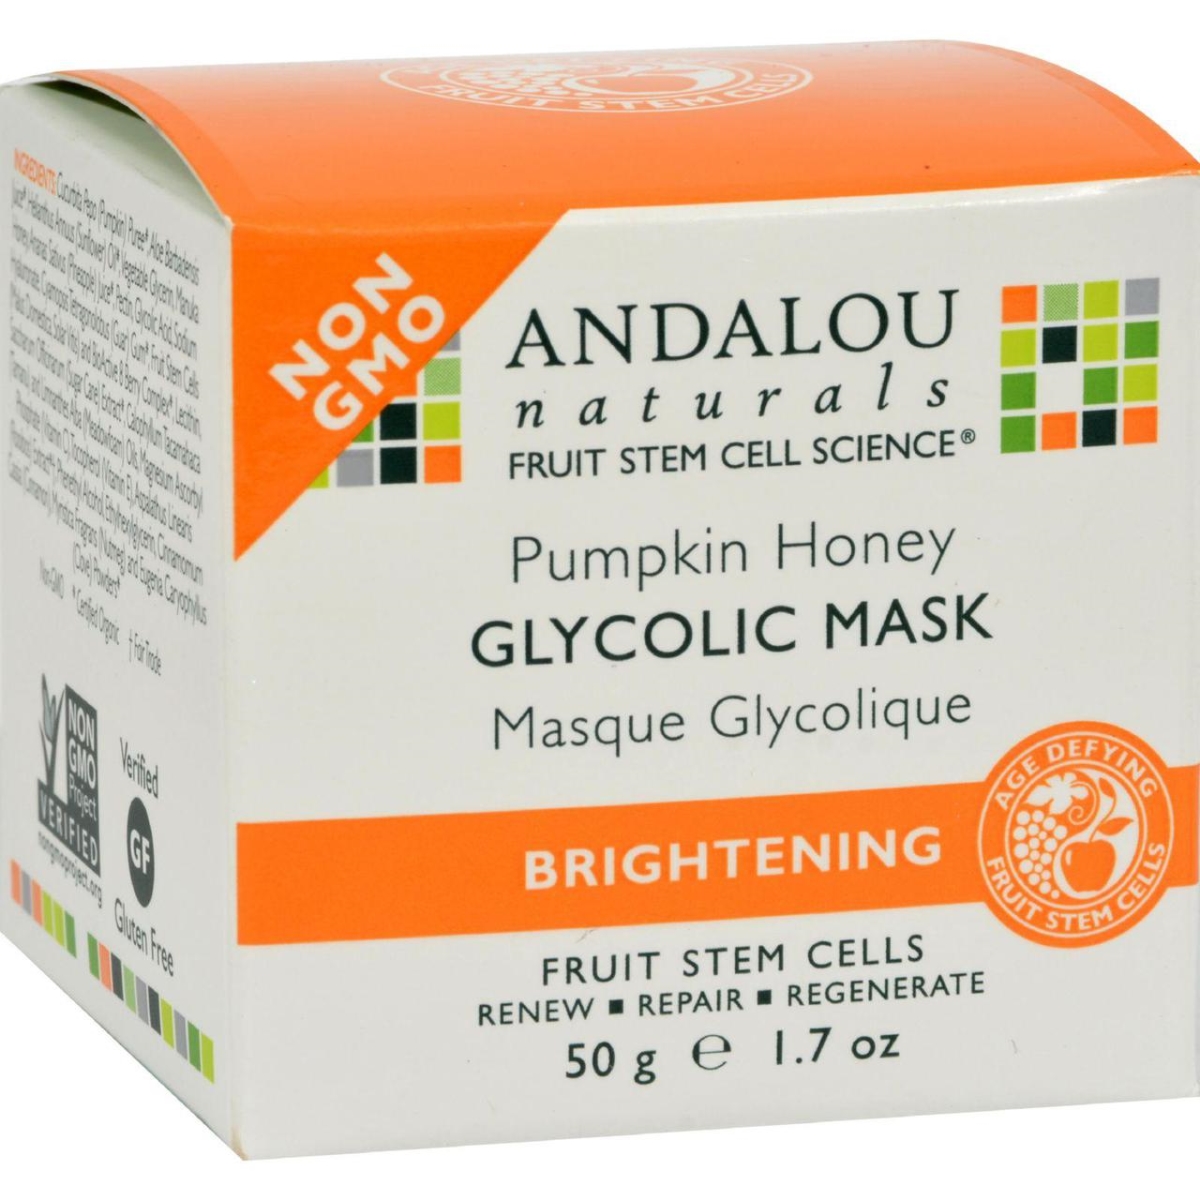 Hg0787499 1.7 Fl Oz Glycolic Brightening Mask Pumpkin Honey